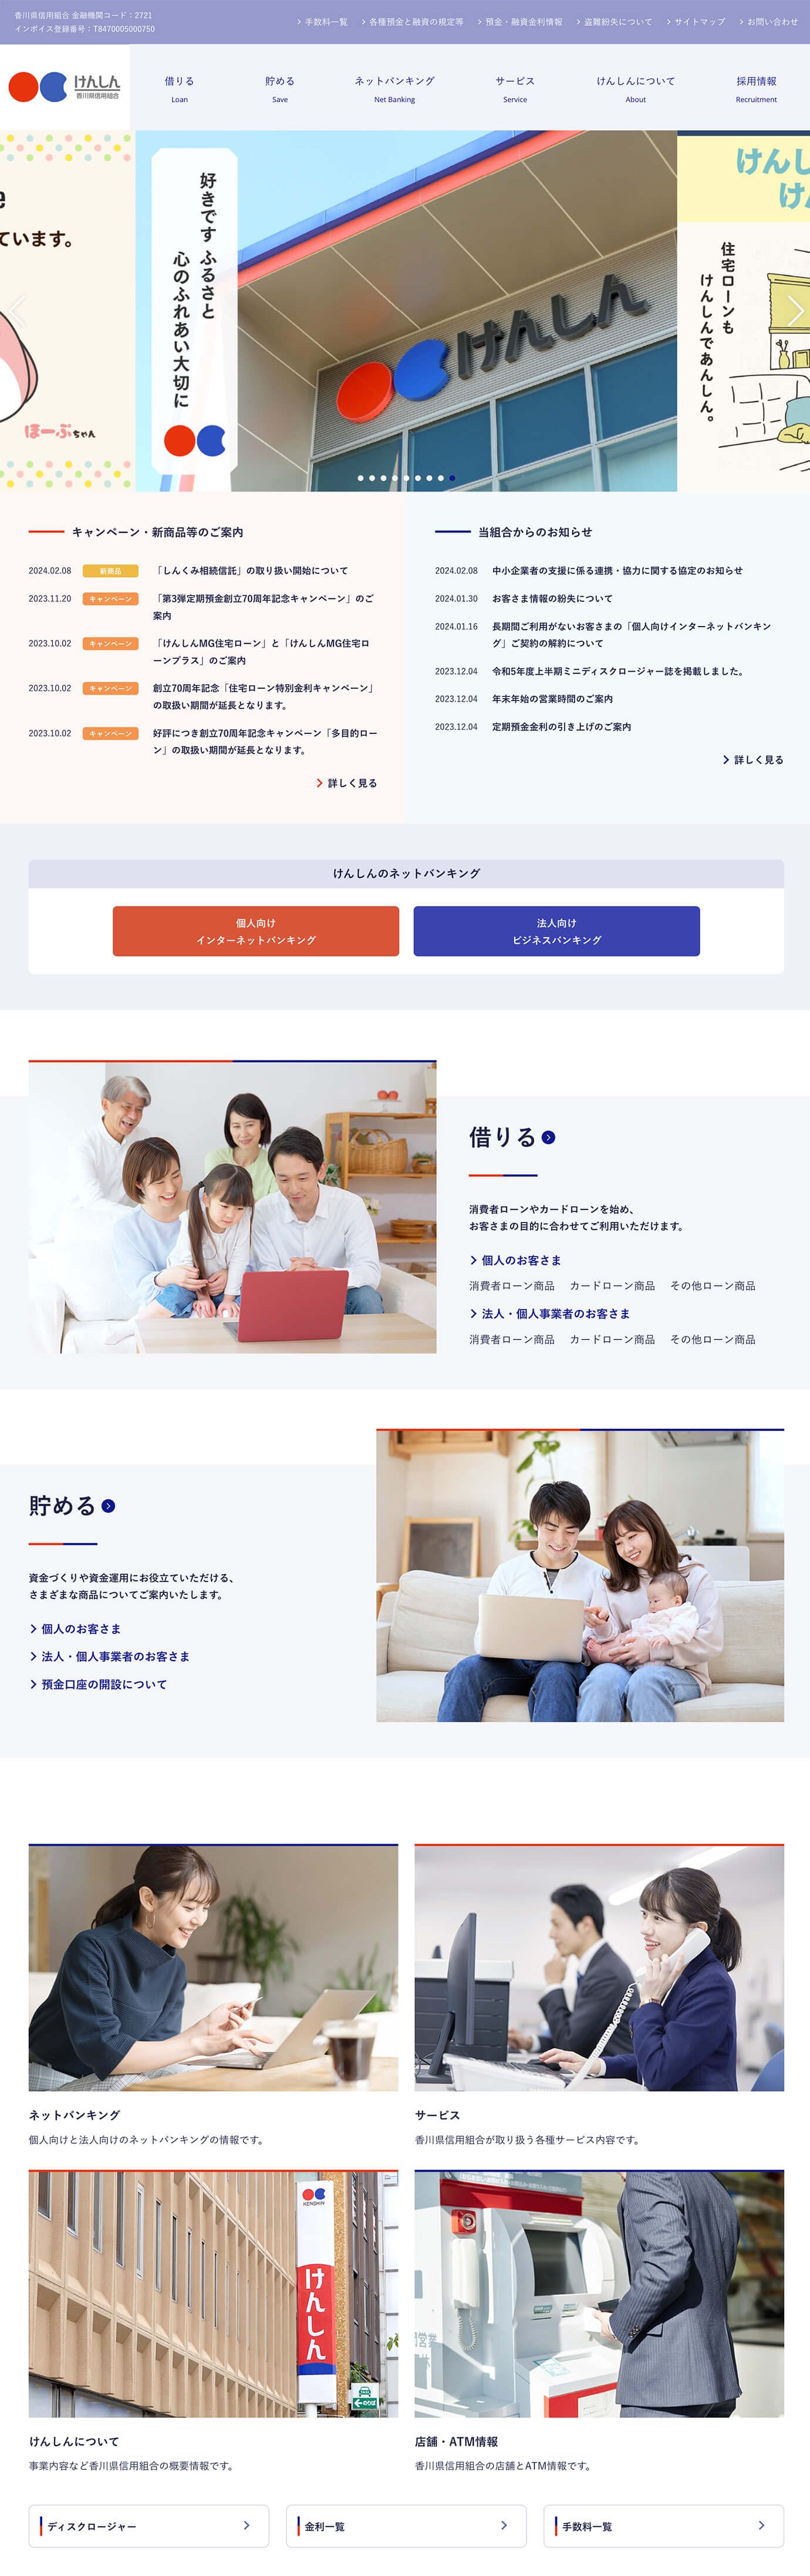 香川県信用組合様のWebサイト